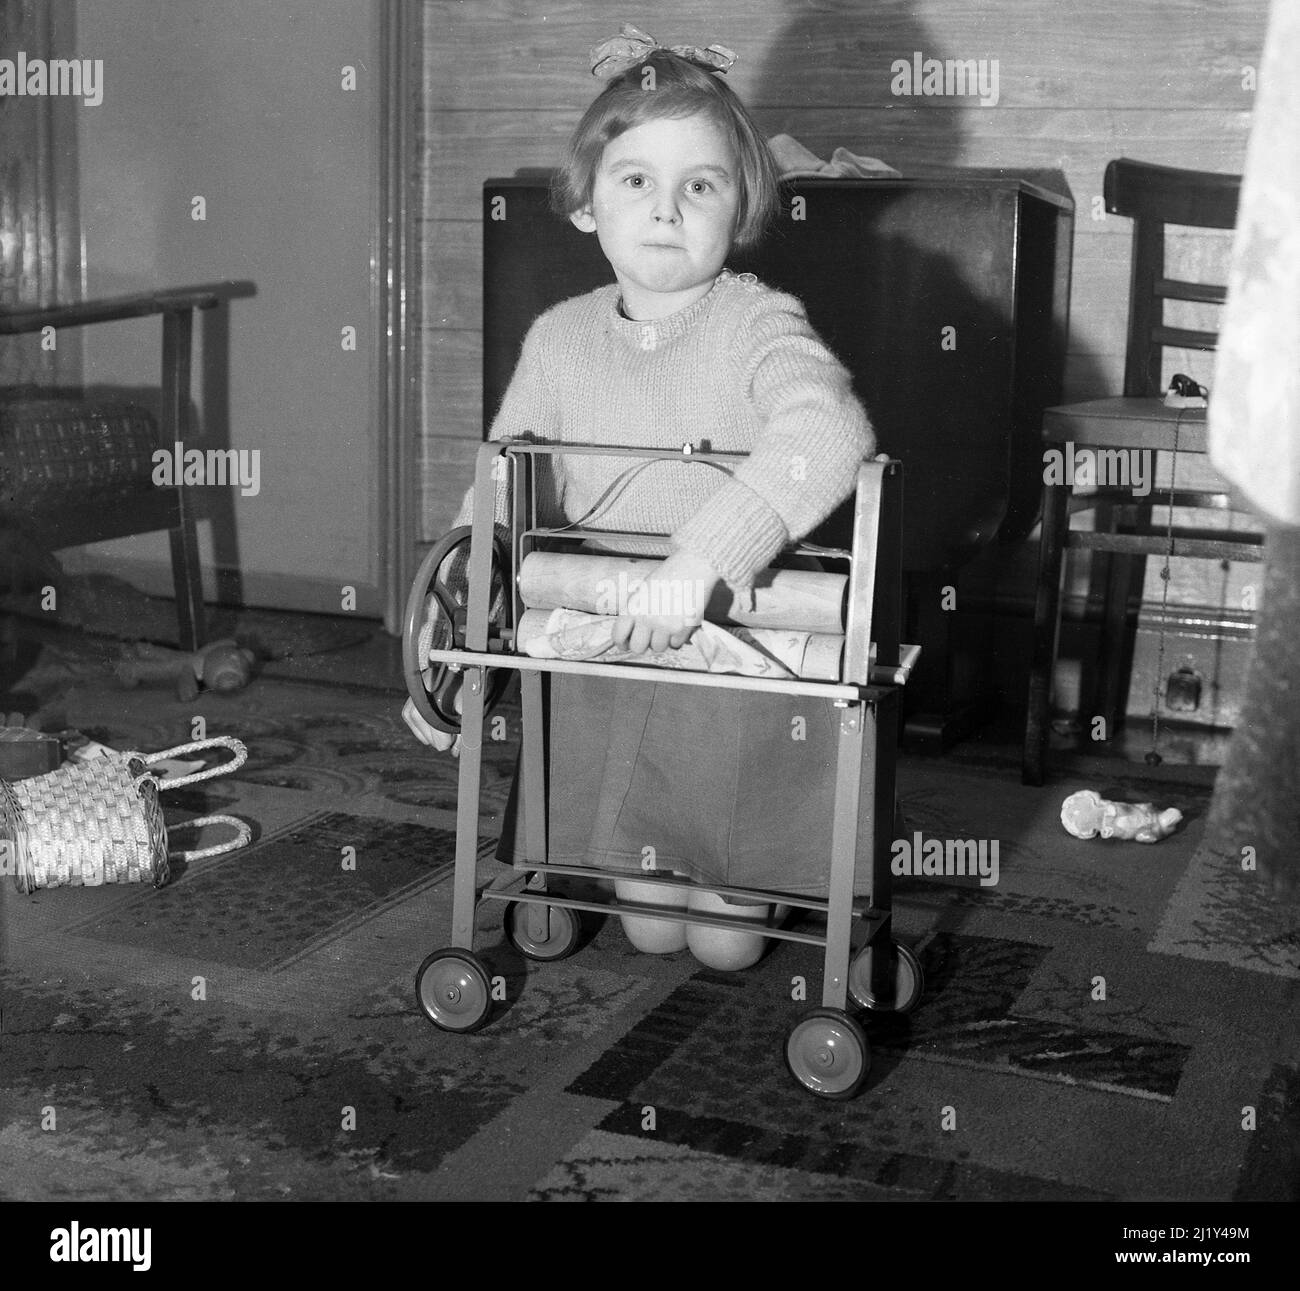 Kinderkleidung der 1950er jahre Schwarzweiß-Stockfotos und -bilder - Alamy